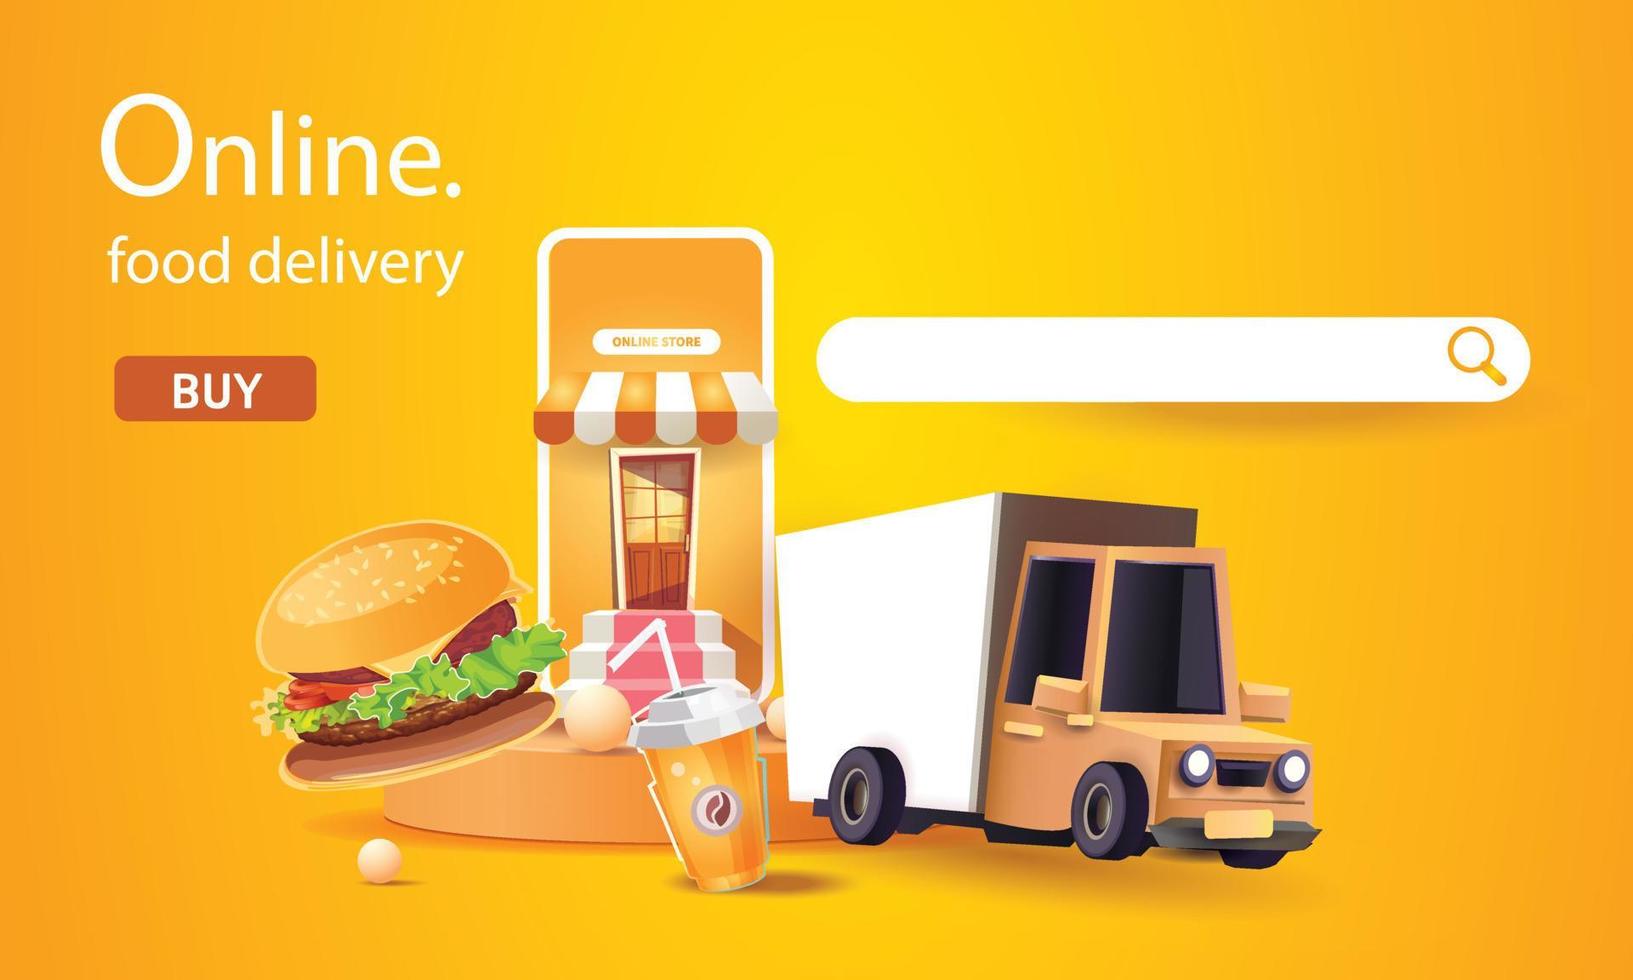 voedselbezorging online op telefoon oranje achtergrond vectorillustratie fastfood ontwerpconcept zakelijke winkel promotie vervoer naar huis vector